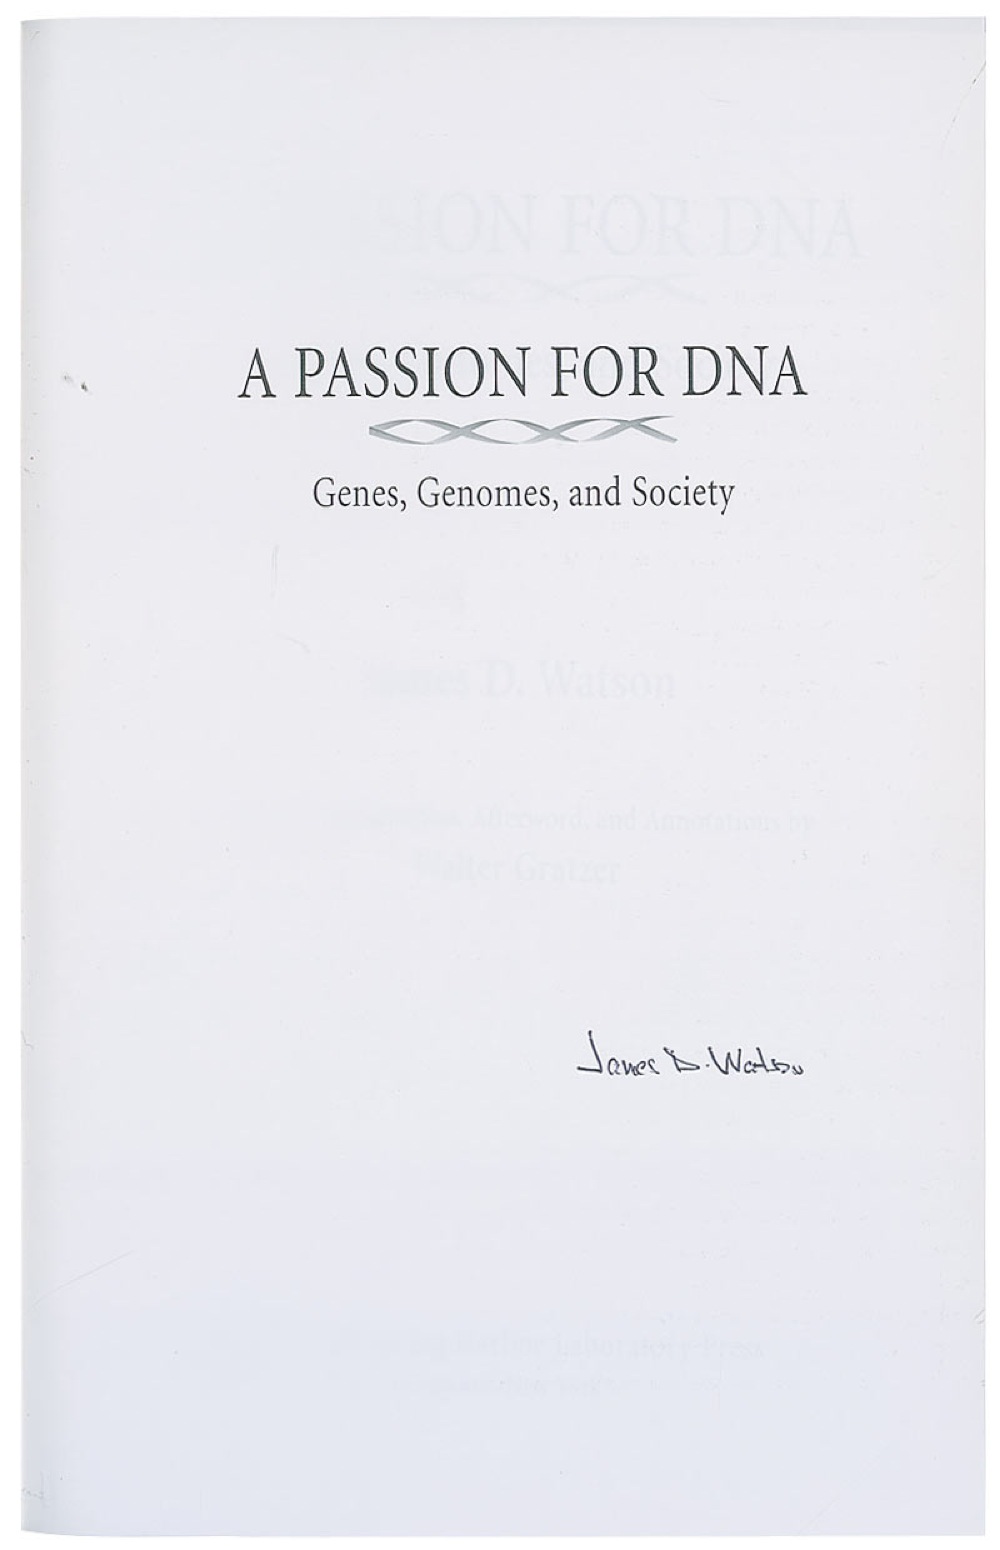 Lot #225 DNA: James D. Watson